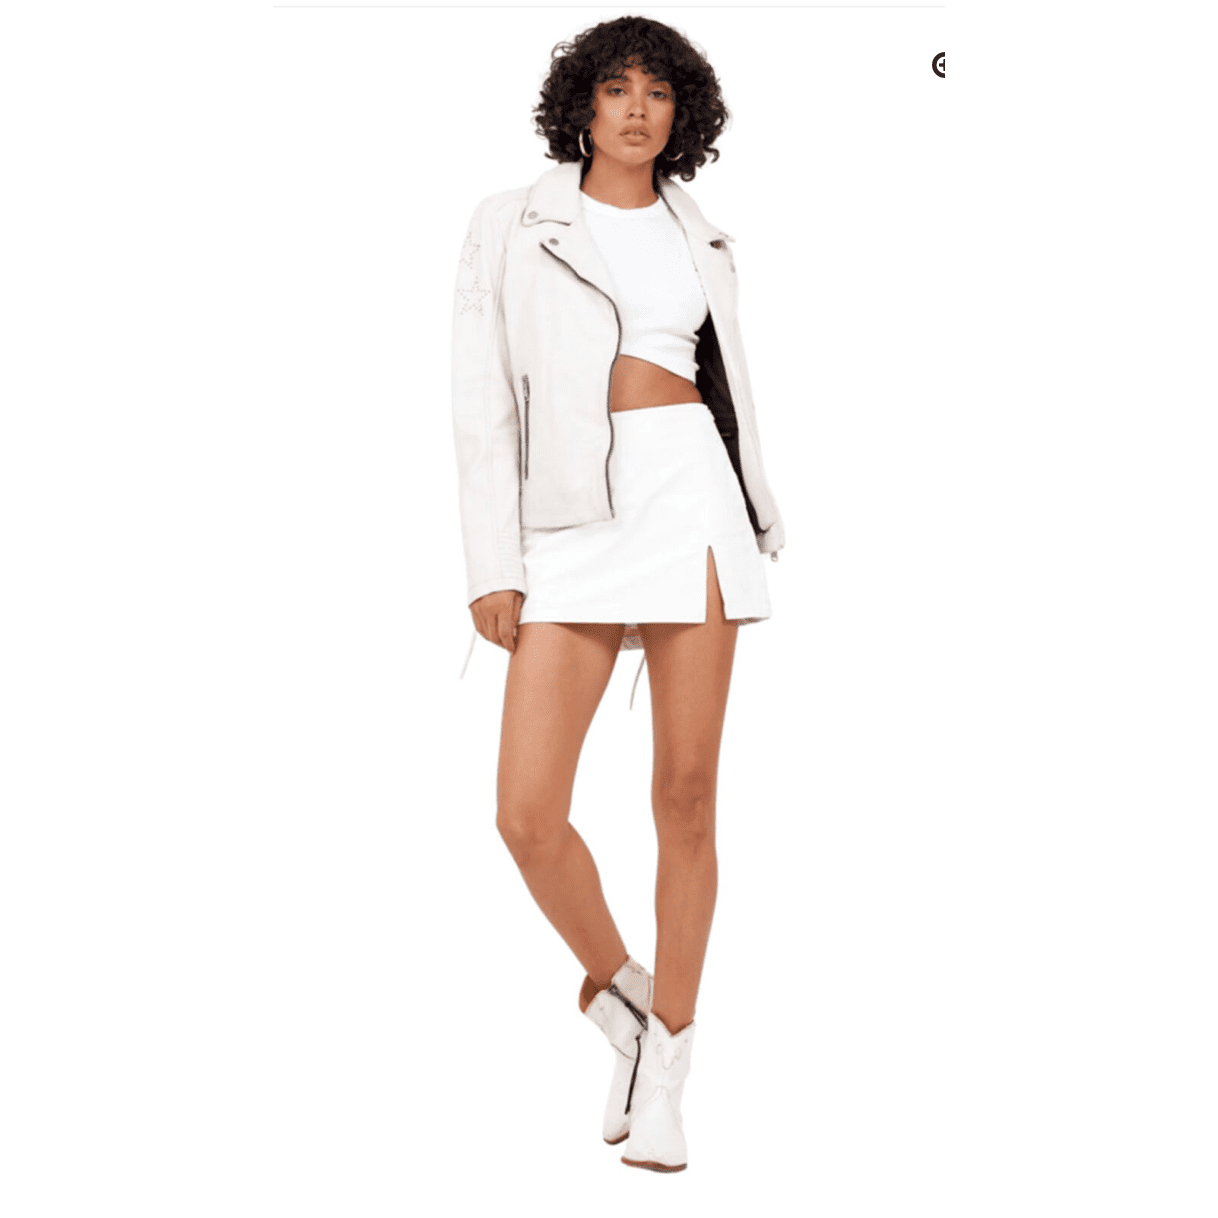 Mauritius Wana Leather Studded Star Jacket - White